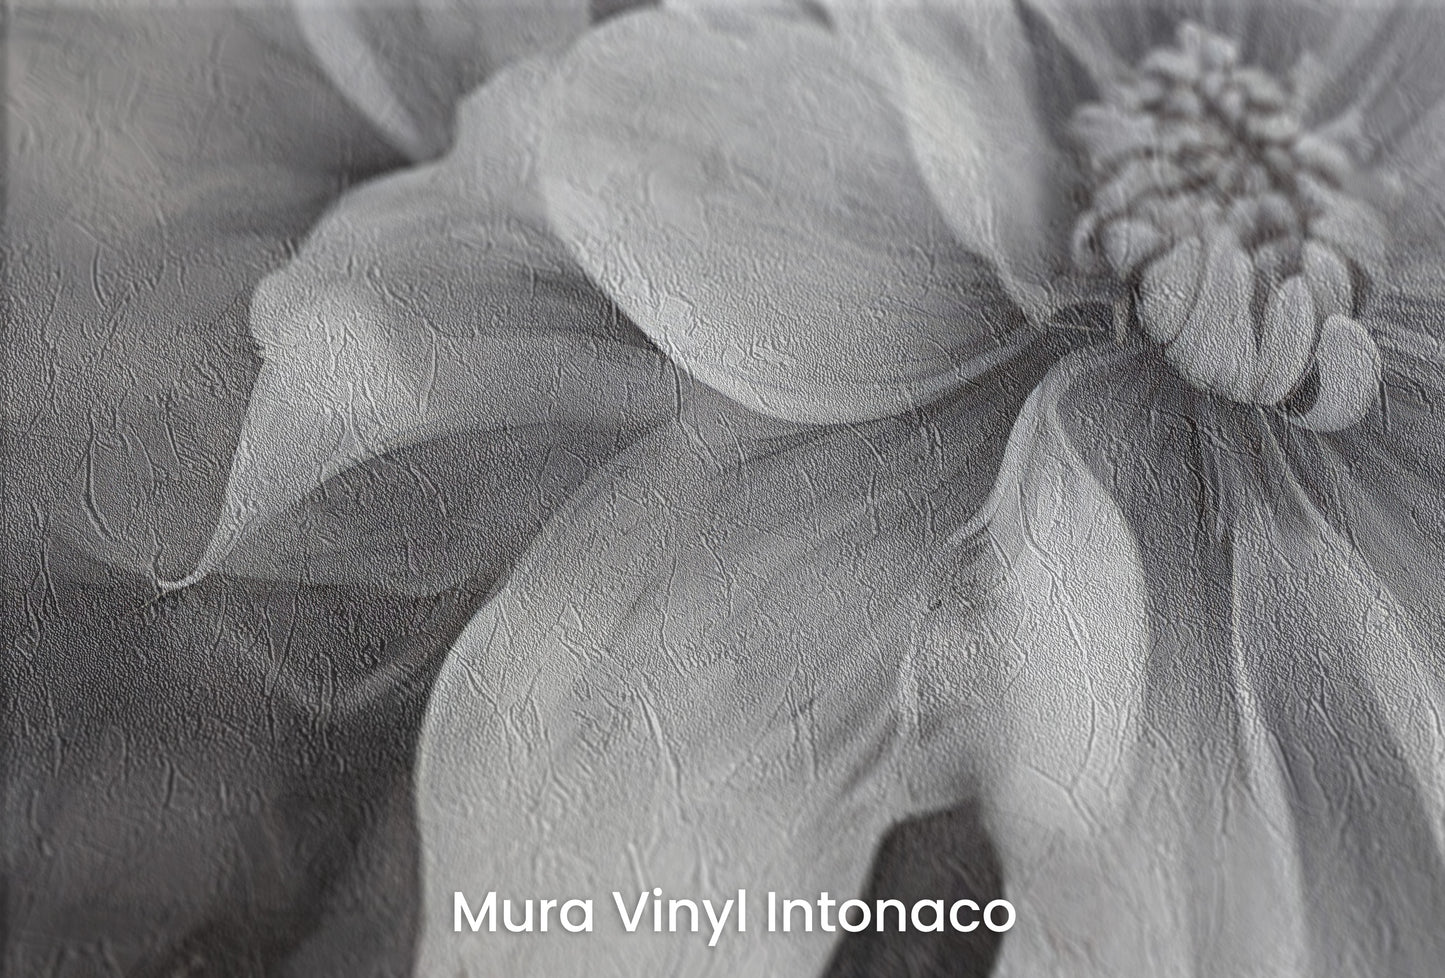 Zbliżenie na artystyczną fototapetę o nazwie NOIR FLORALE na podłożu Mura Vinyl Intonaco - struktura tartego tynku.